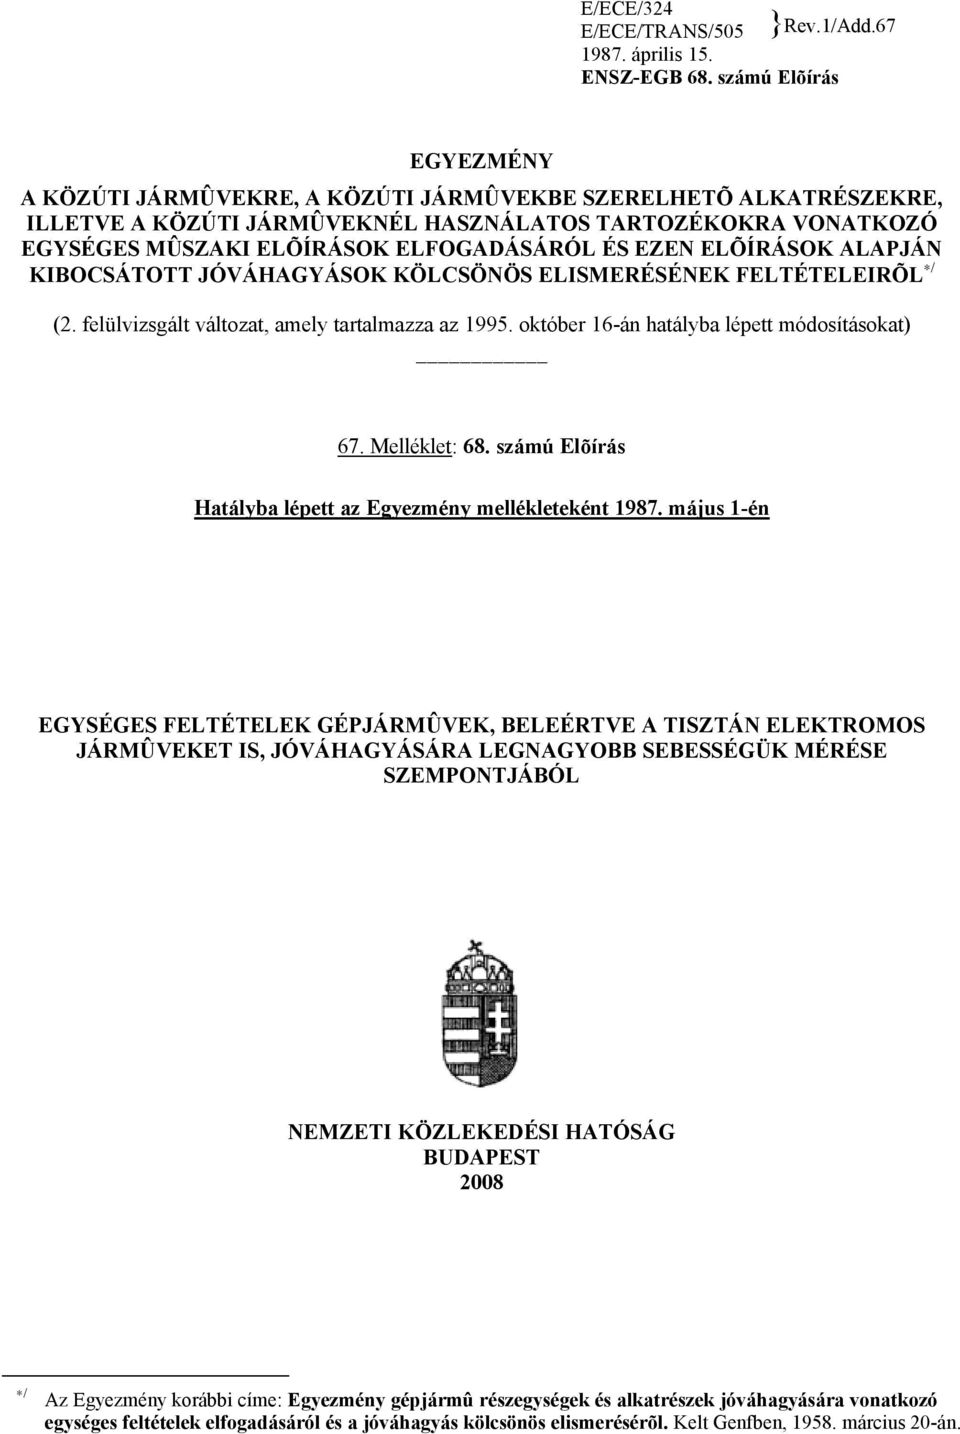 EZEN ELÕÍRÁSOK ALAPJÁN KIBOCSÁTOTT JÓVÁHAGYÁSOK KÖLCSÖNÖS ELISMERÉSÉNEK FELTÉTELEIRÕL / (2. felülvizsgált változat, amely tartalmazza az 1995. október 16-án hatályba lépett módosításokat) 67.